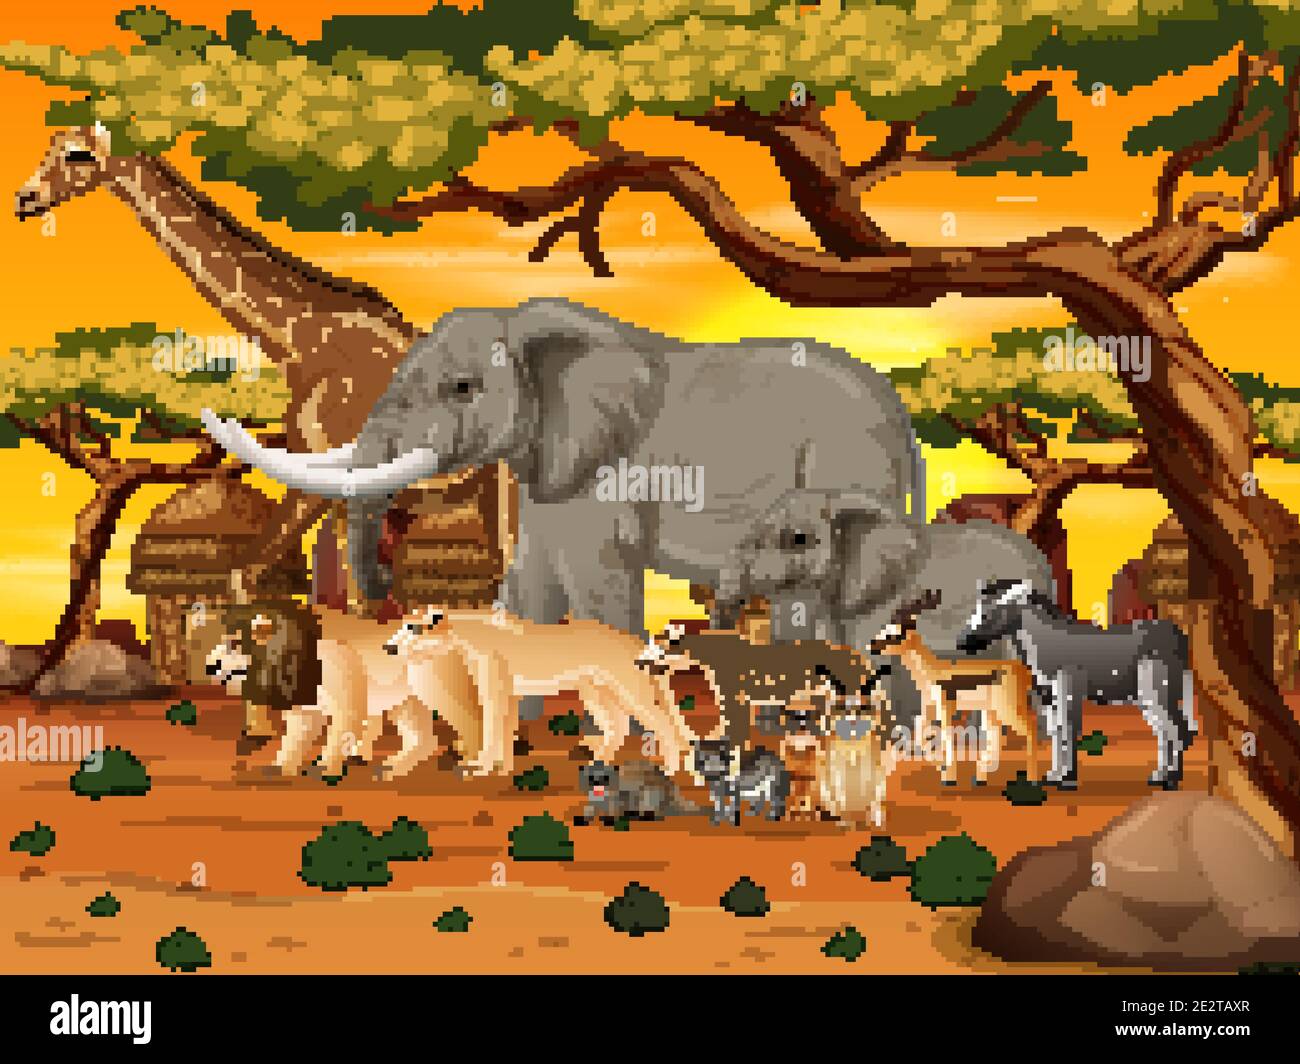 jungles in africa animals